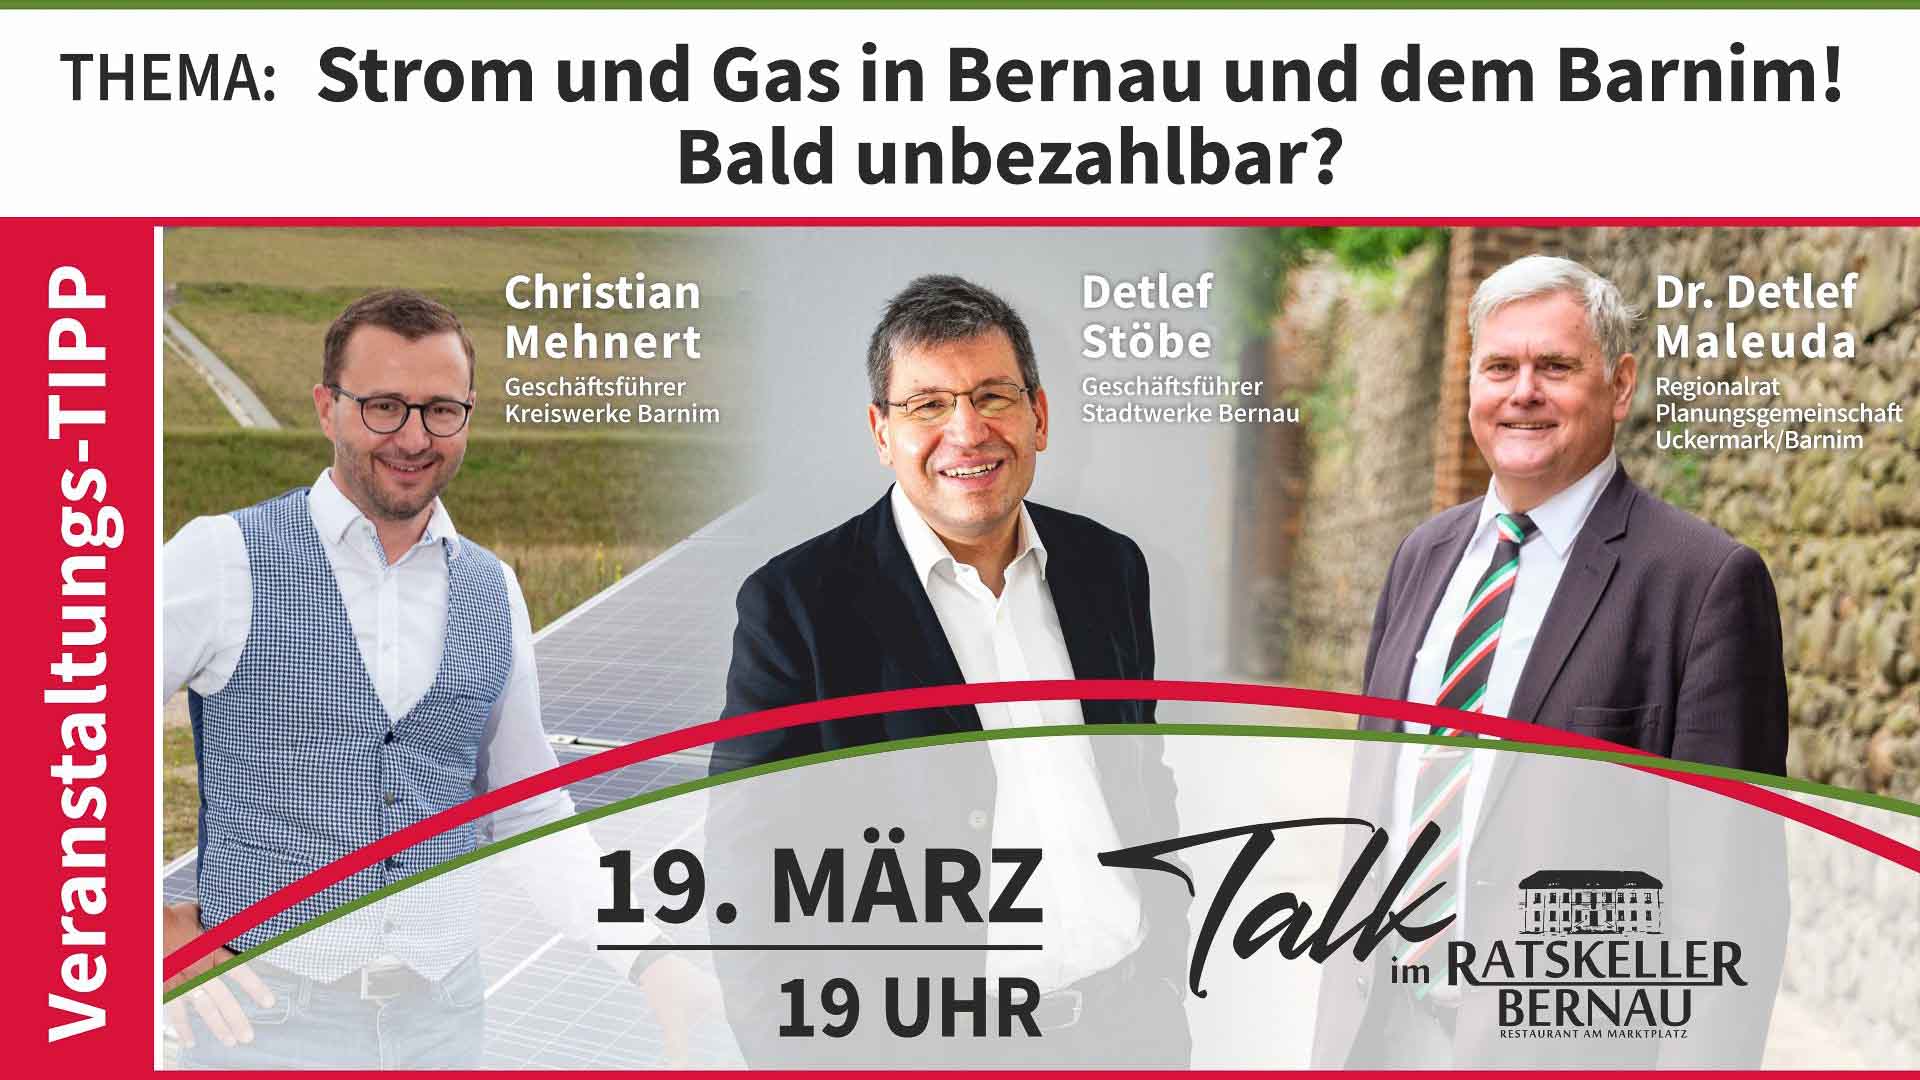 Strom und Gas in Bernau und Barnim bald unbezahlbar? Talk im Ratskeller Bernau!